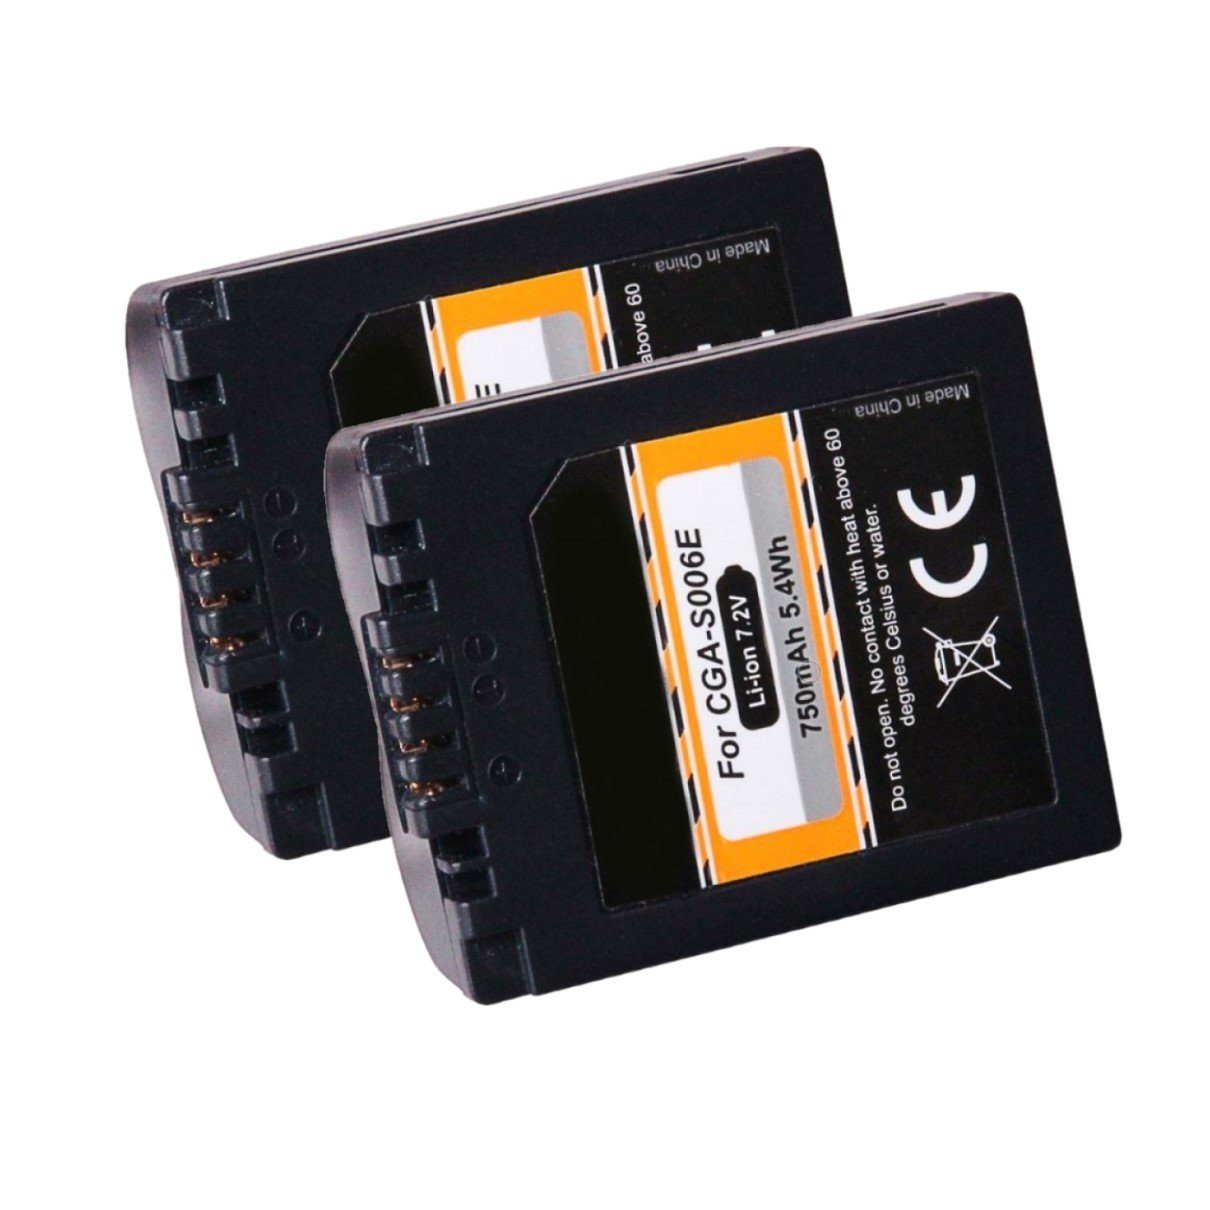 GOLDBATT 2x Akku für Panasonic Lumix DMC-FZ50 FZ7 FZ8 CGR-S006 DMC-FZ30BB DMC-FZ30-S Kamera-Akku Ersatzakku 750 mAh (7,2 V, 2 St), 100% kompatibel mit den Original Akkus durch maßgefertigte Passform inklusive Überhitzungsschutz